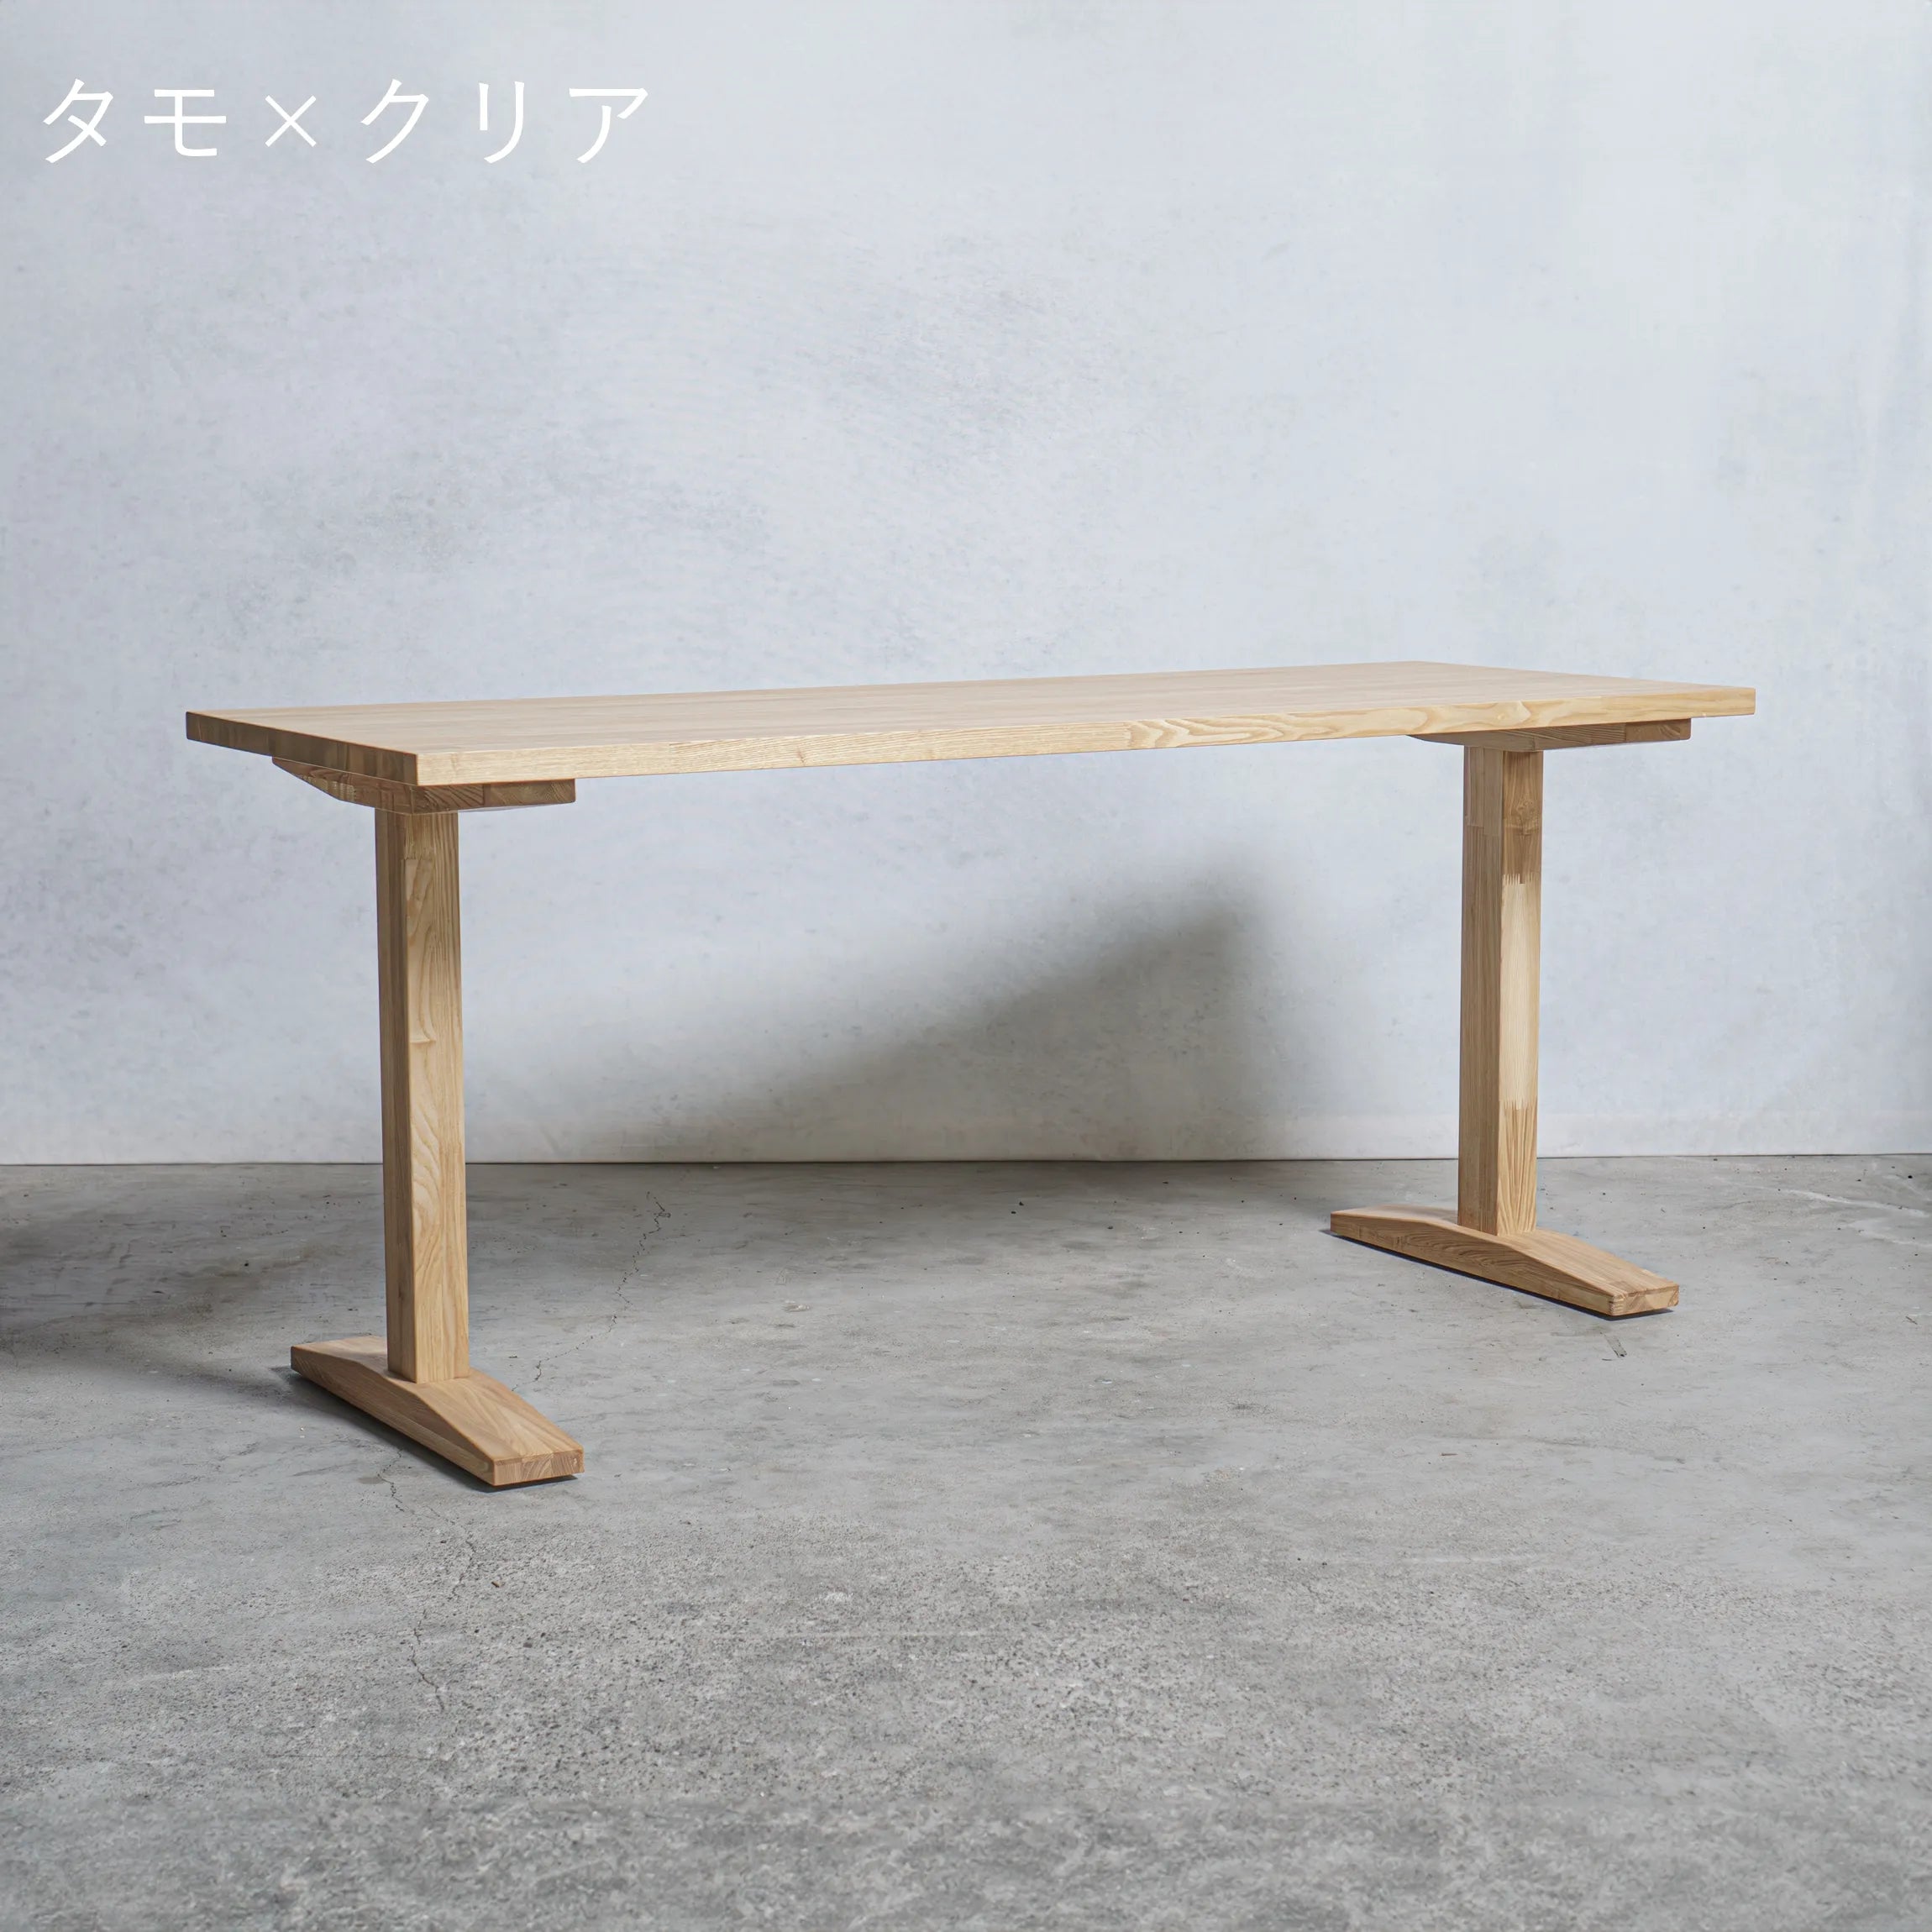 木製 テーブル / デスク タモ材 工型 オーダーメイド【清水材木店】